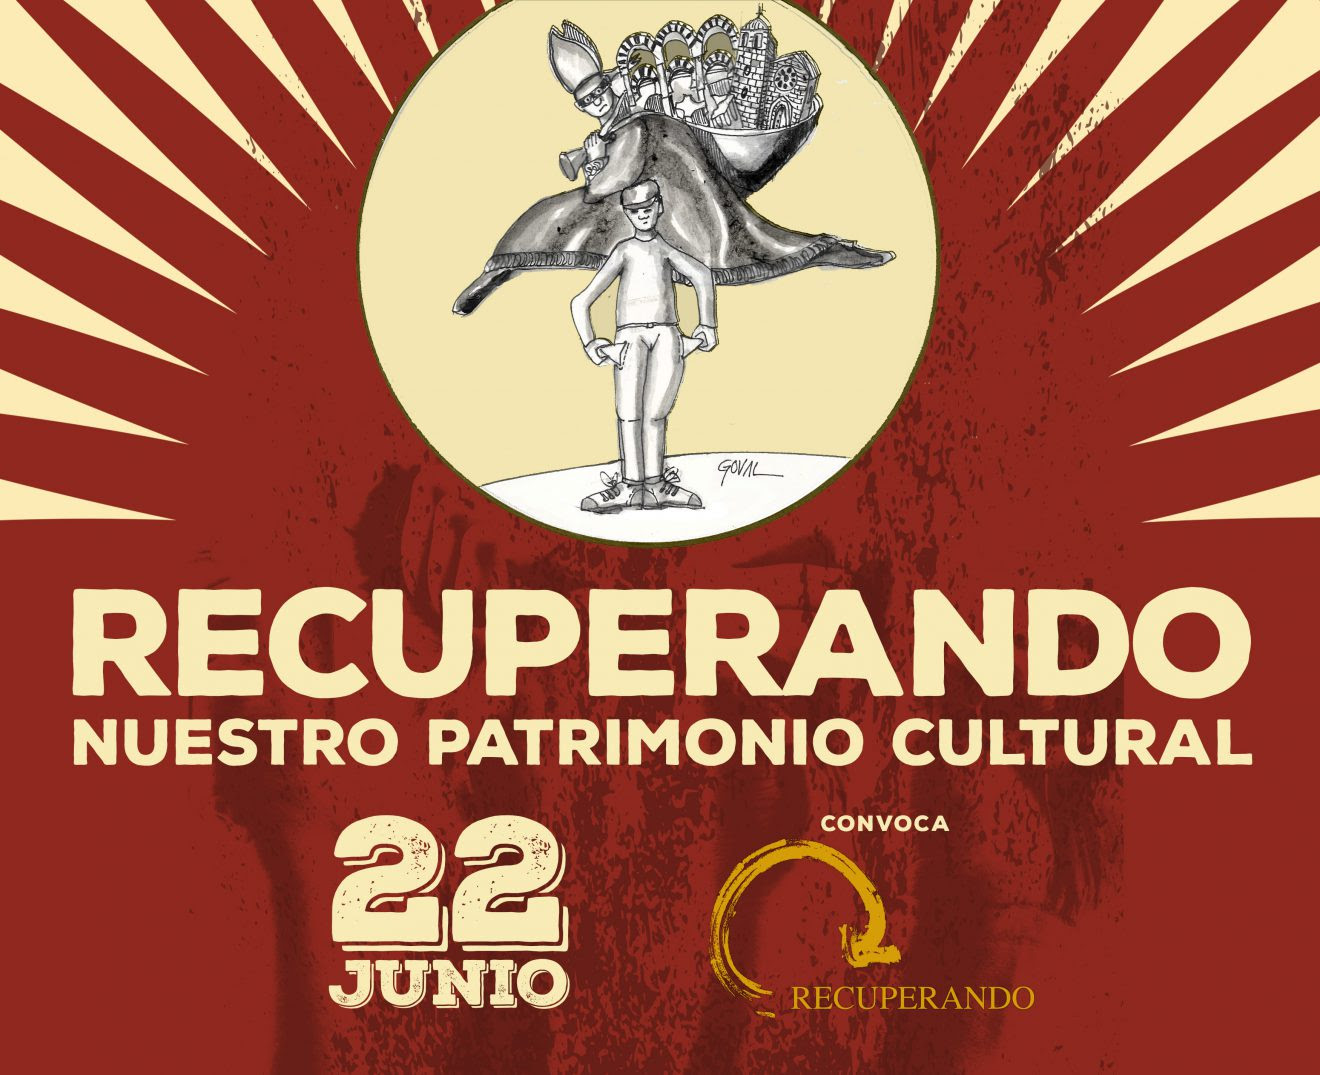 Agenda del 22 de junio: concentraciones en toda España en contra de las inmatriculaciones. Consulta tu ciudad